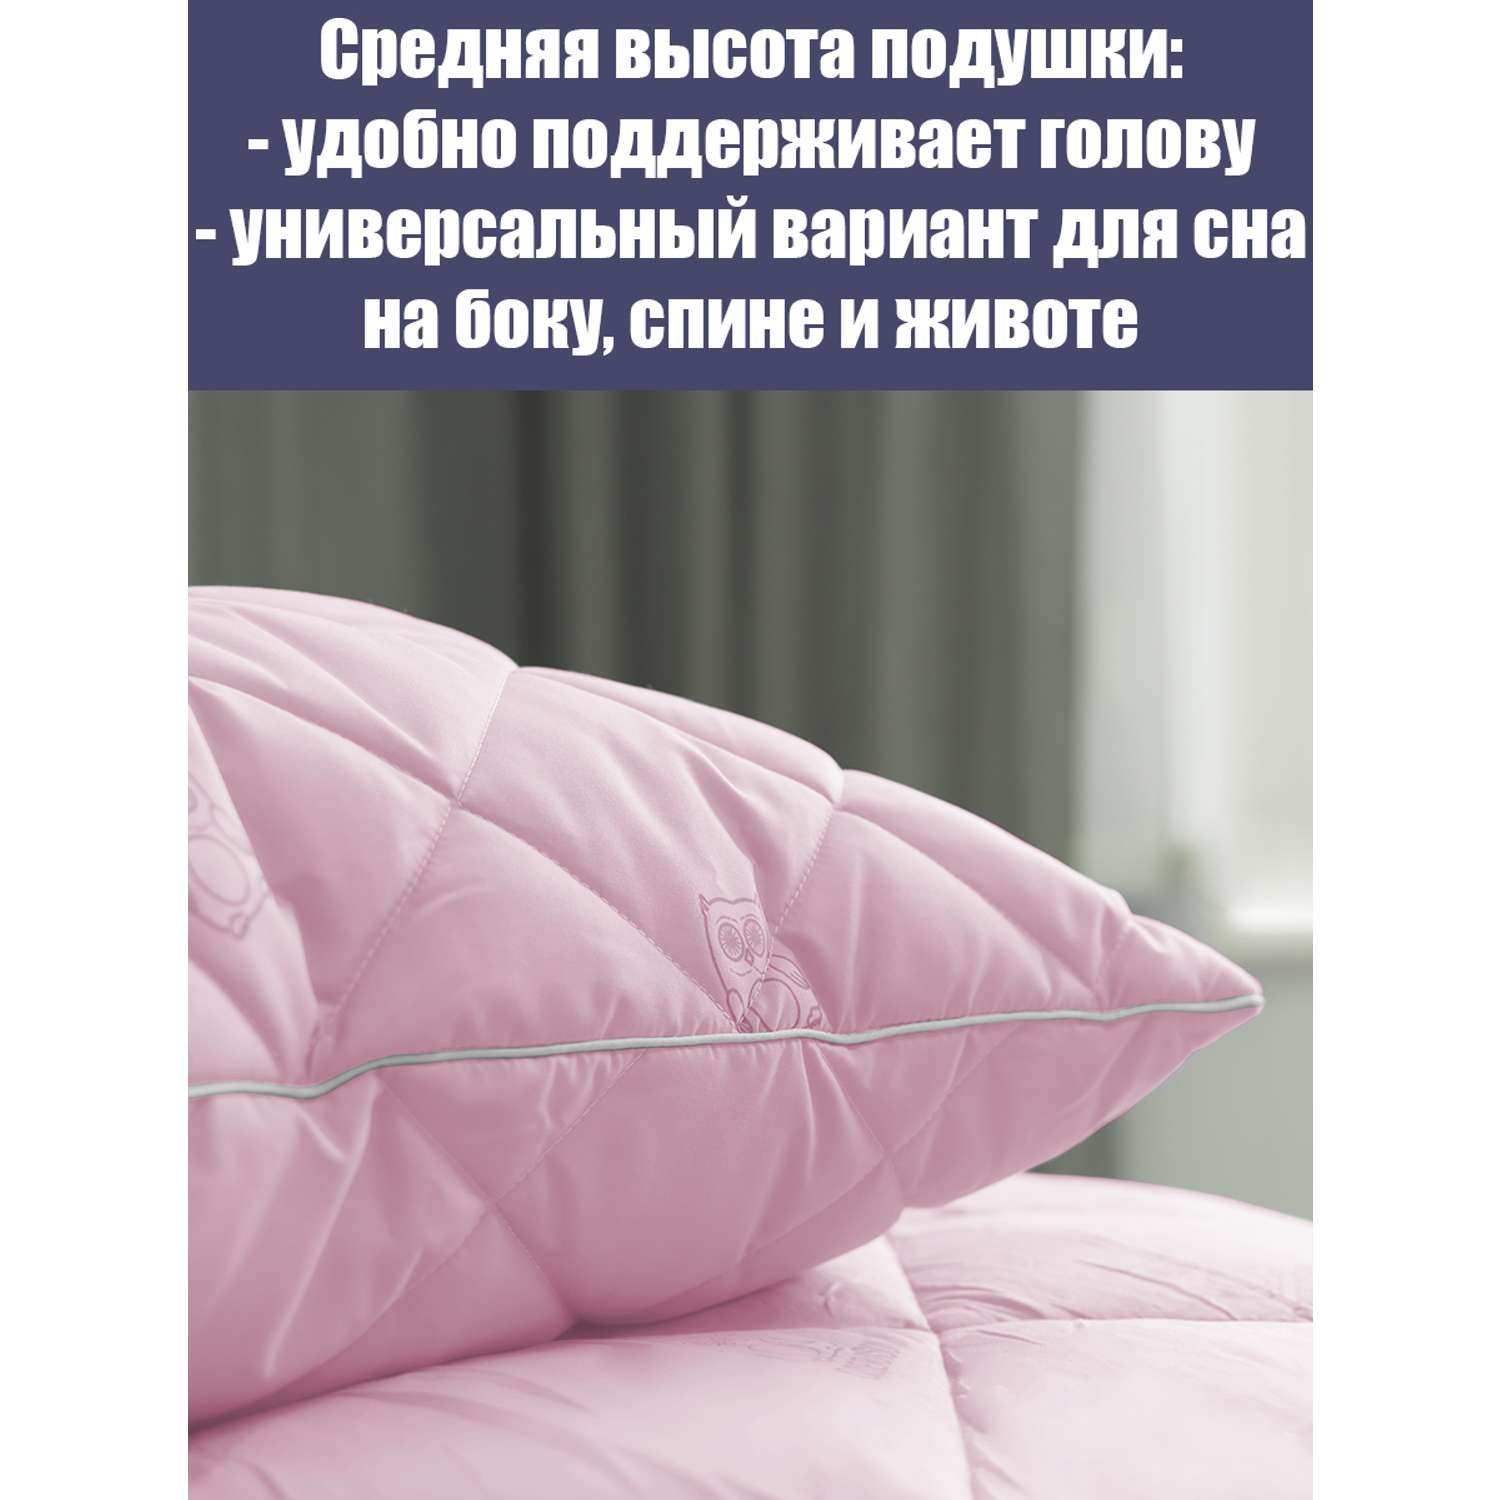 Подушка Мягкий сон одеялсон 70x70 см - фото 2